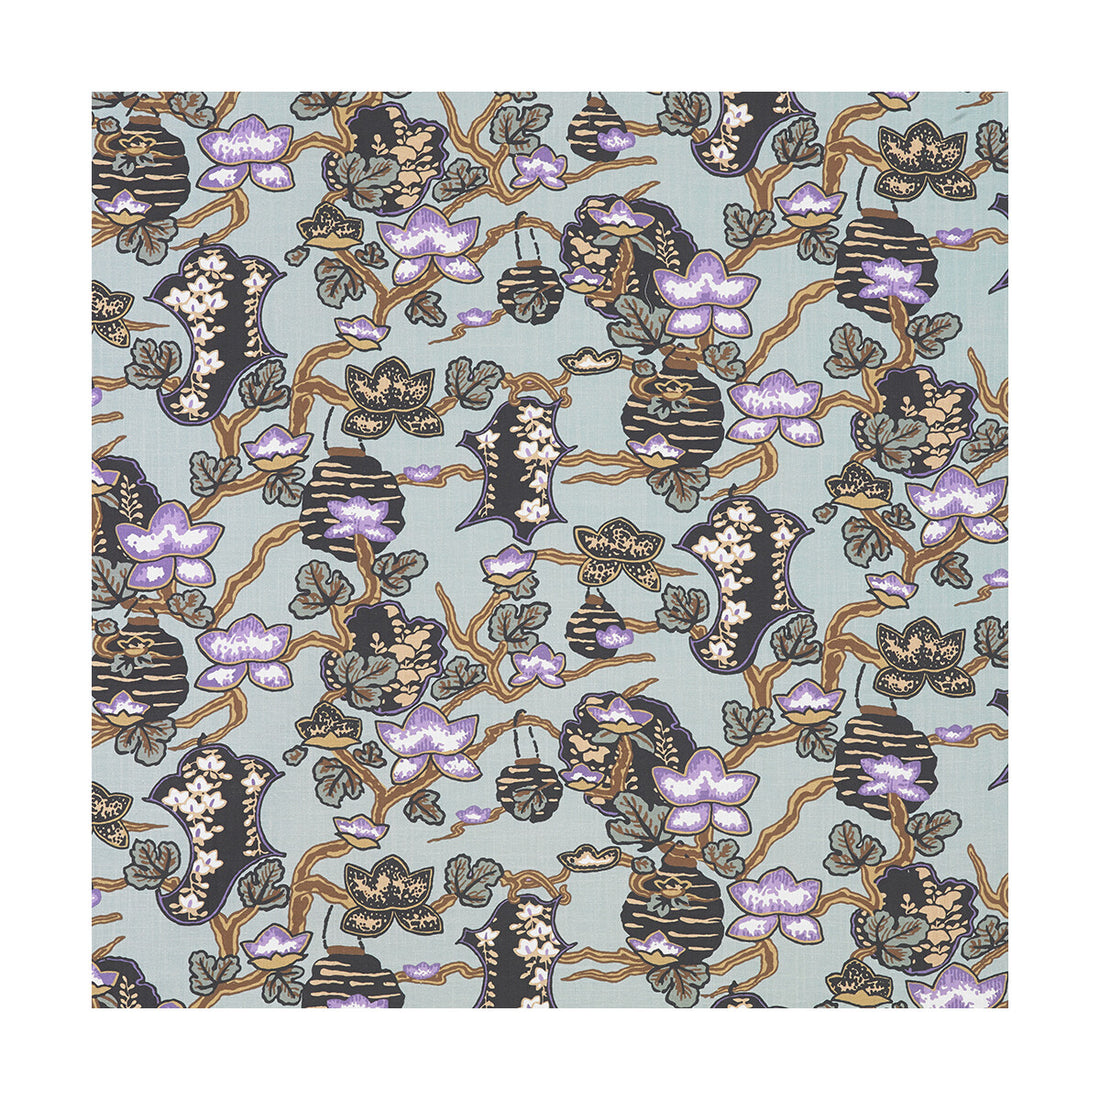 Maria fabric in fondo agua/lavanda color - pattern LCT5364.003.0 - by Gaston y Daniela in the Lorenzo Castillo III collection